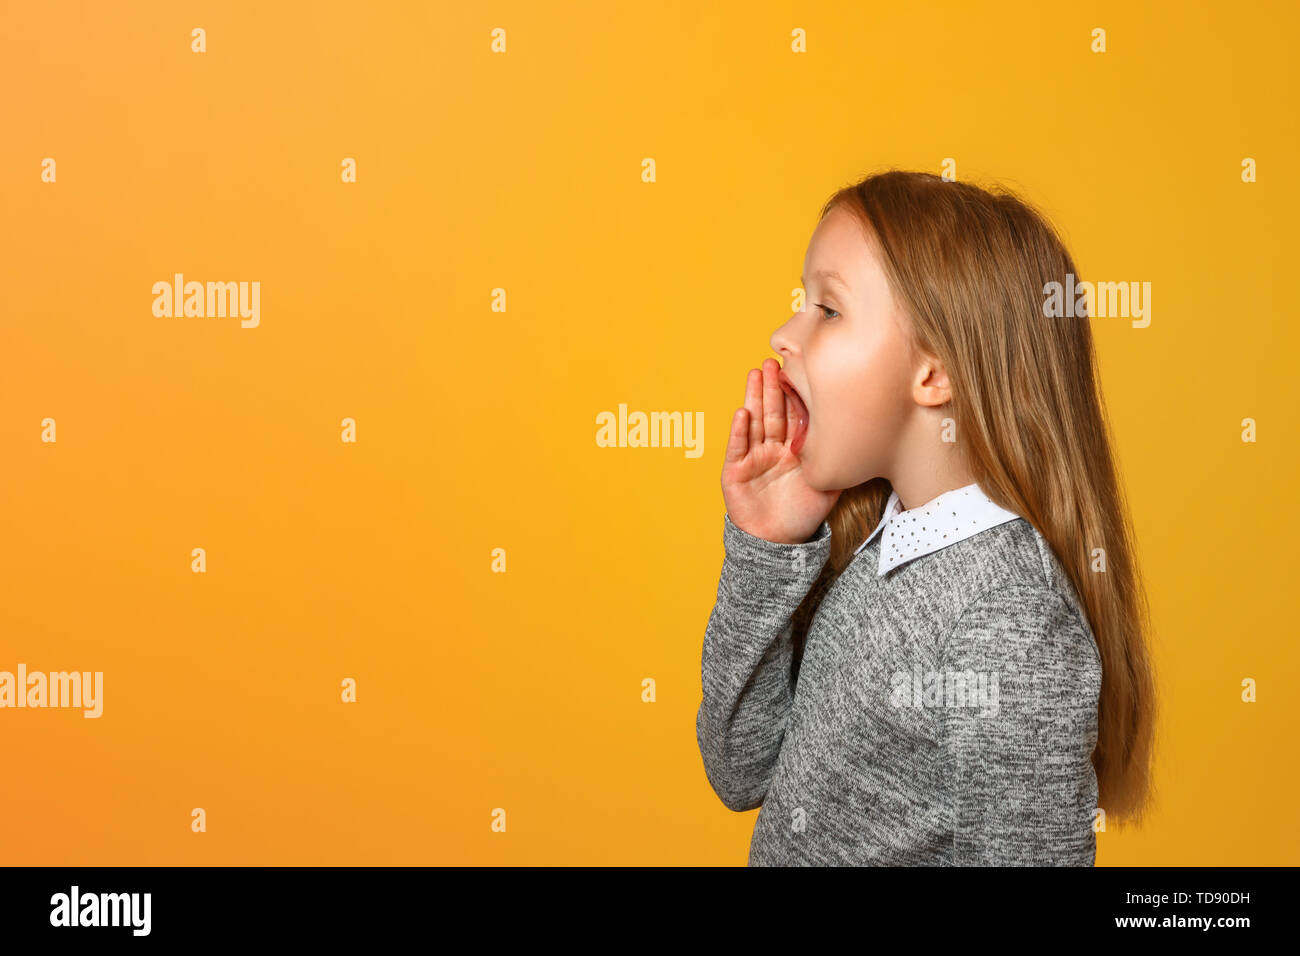 La petite fille crie très fort sur le côté avec une main sur sa bouche. Close-up. Fond jaune. Copier l'espace. Banque D'Images